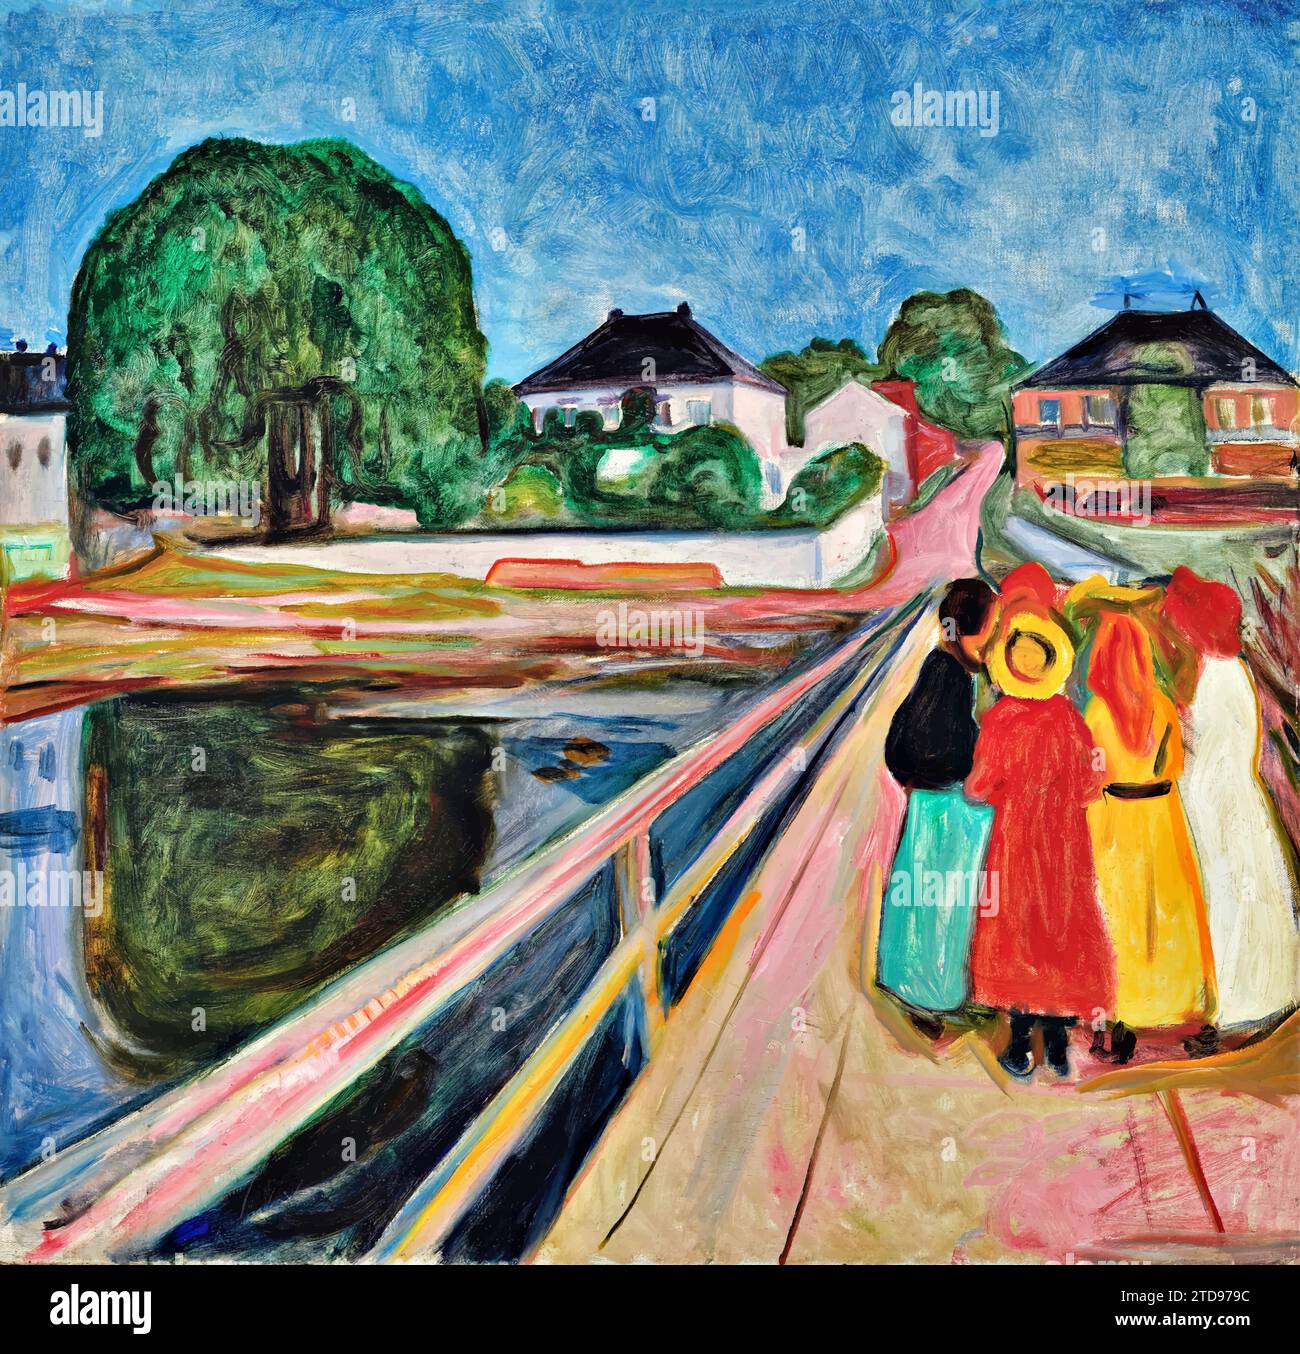 Girls on the bridge (oil on canvas) by Artist Munch, Edvard (1863-1944) / Norwegian. Stock Vector